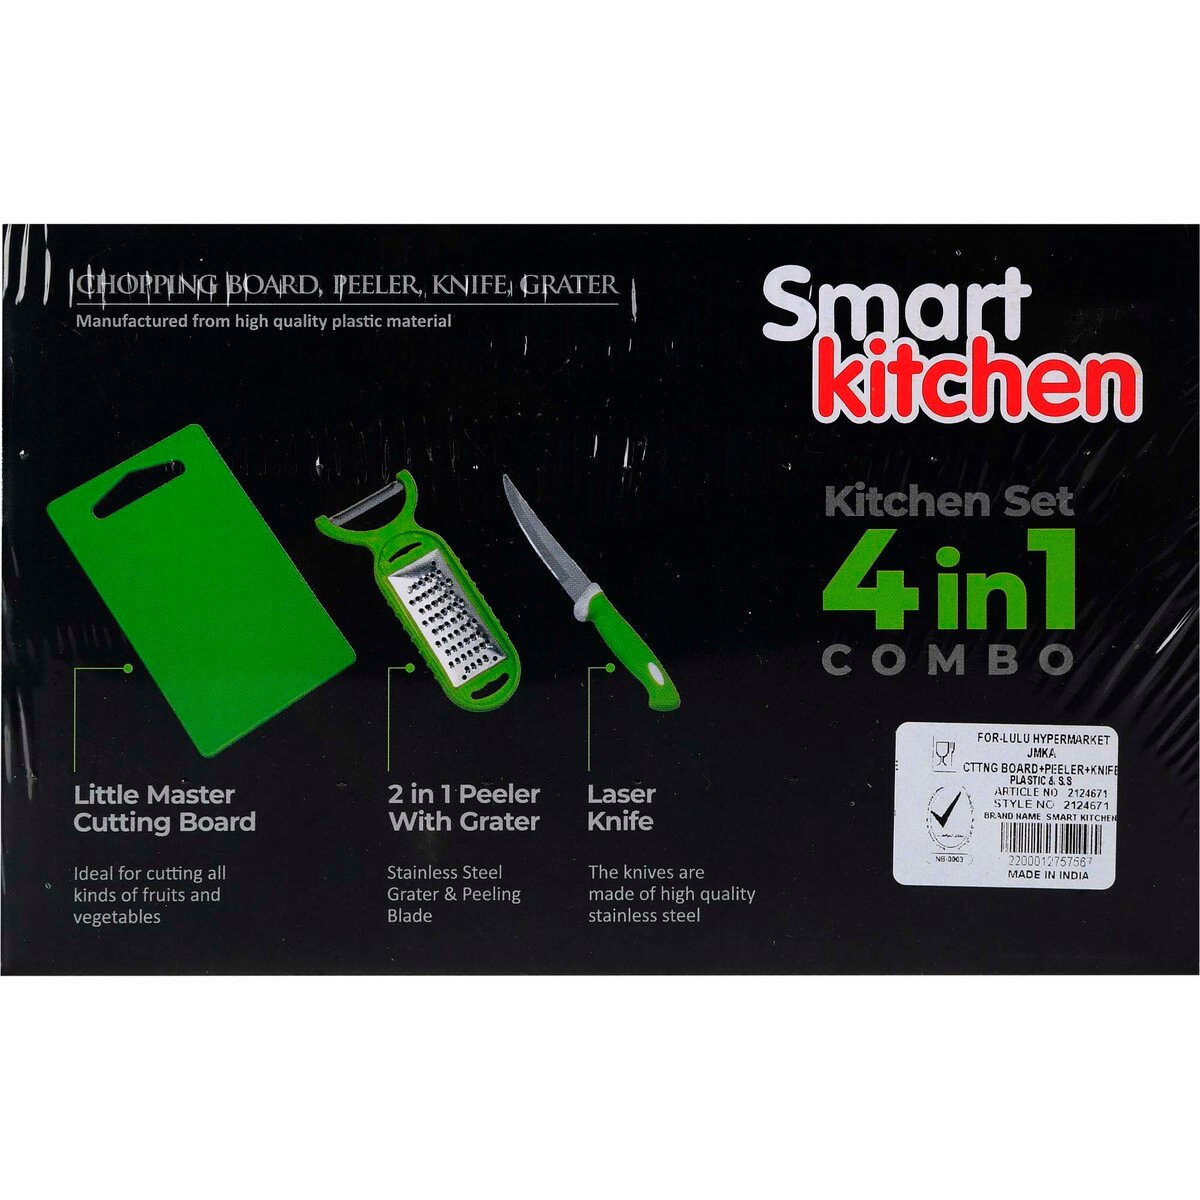 Smart Kitchen Cutting Board + Peeler + Knife 4in1